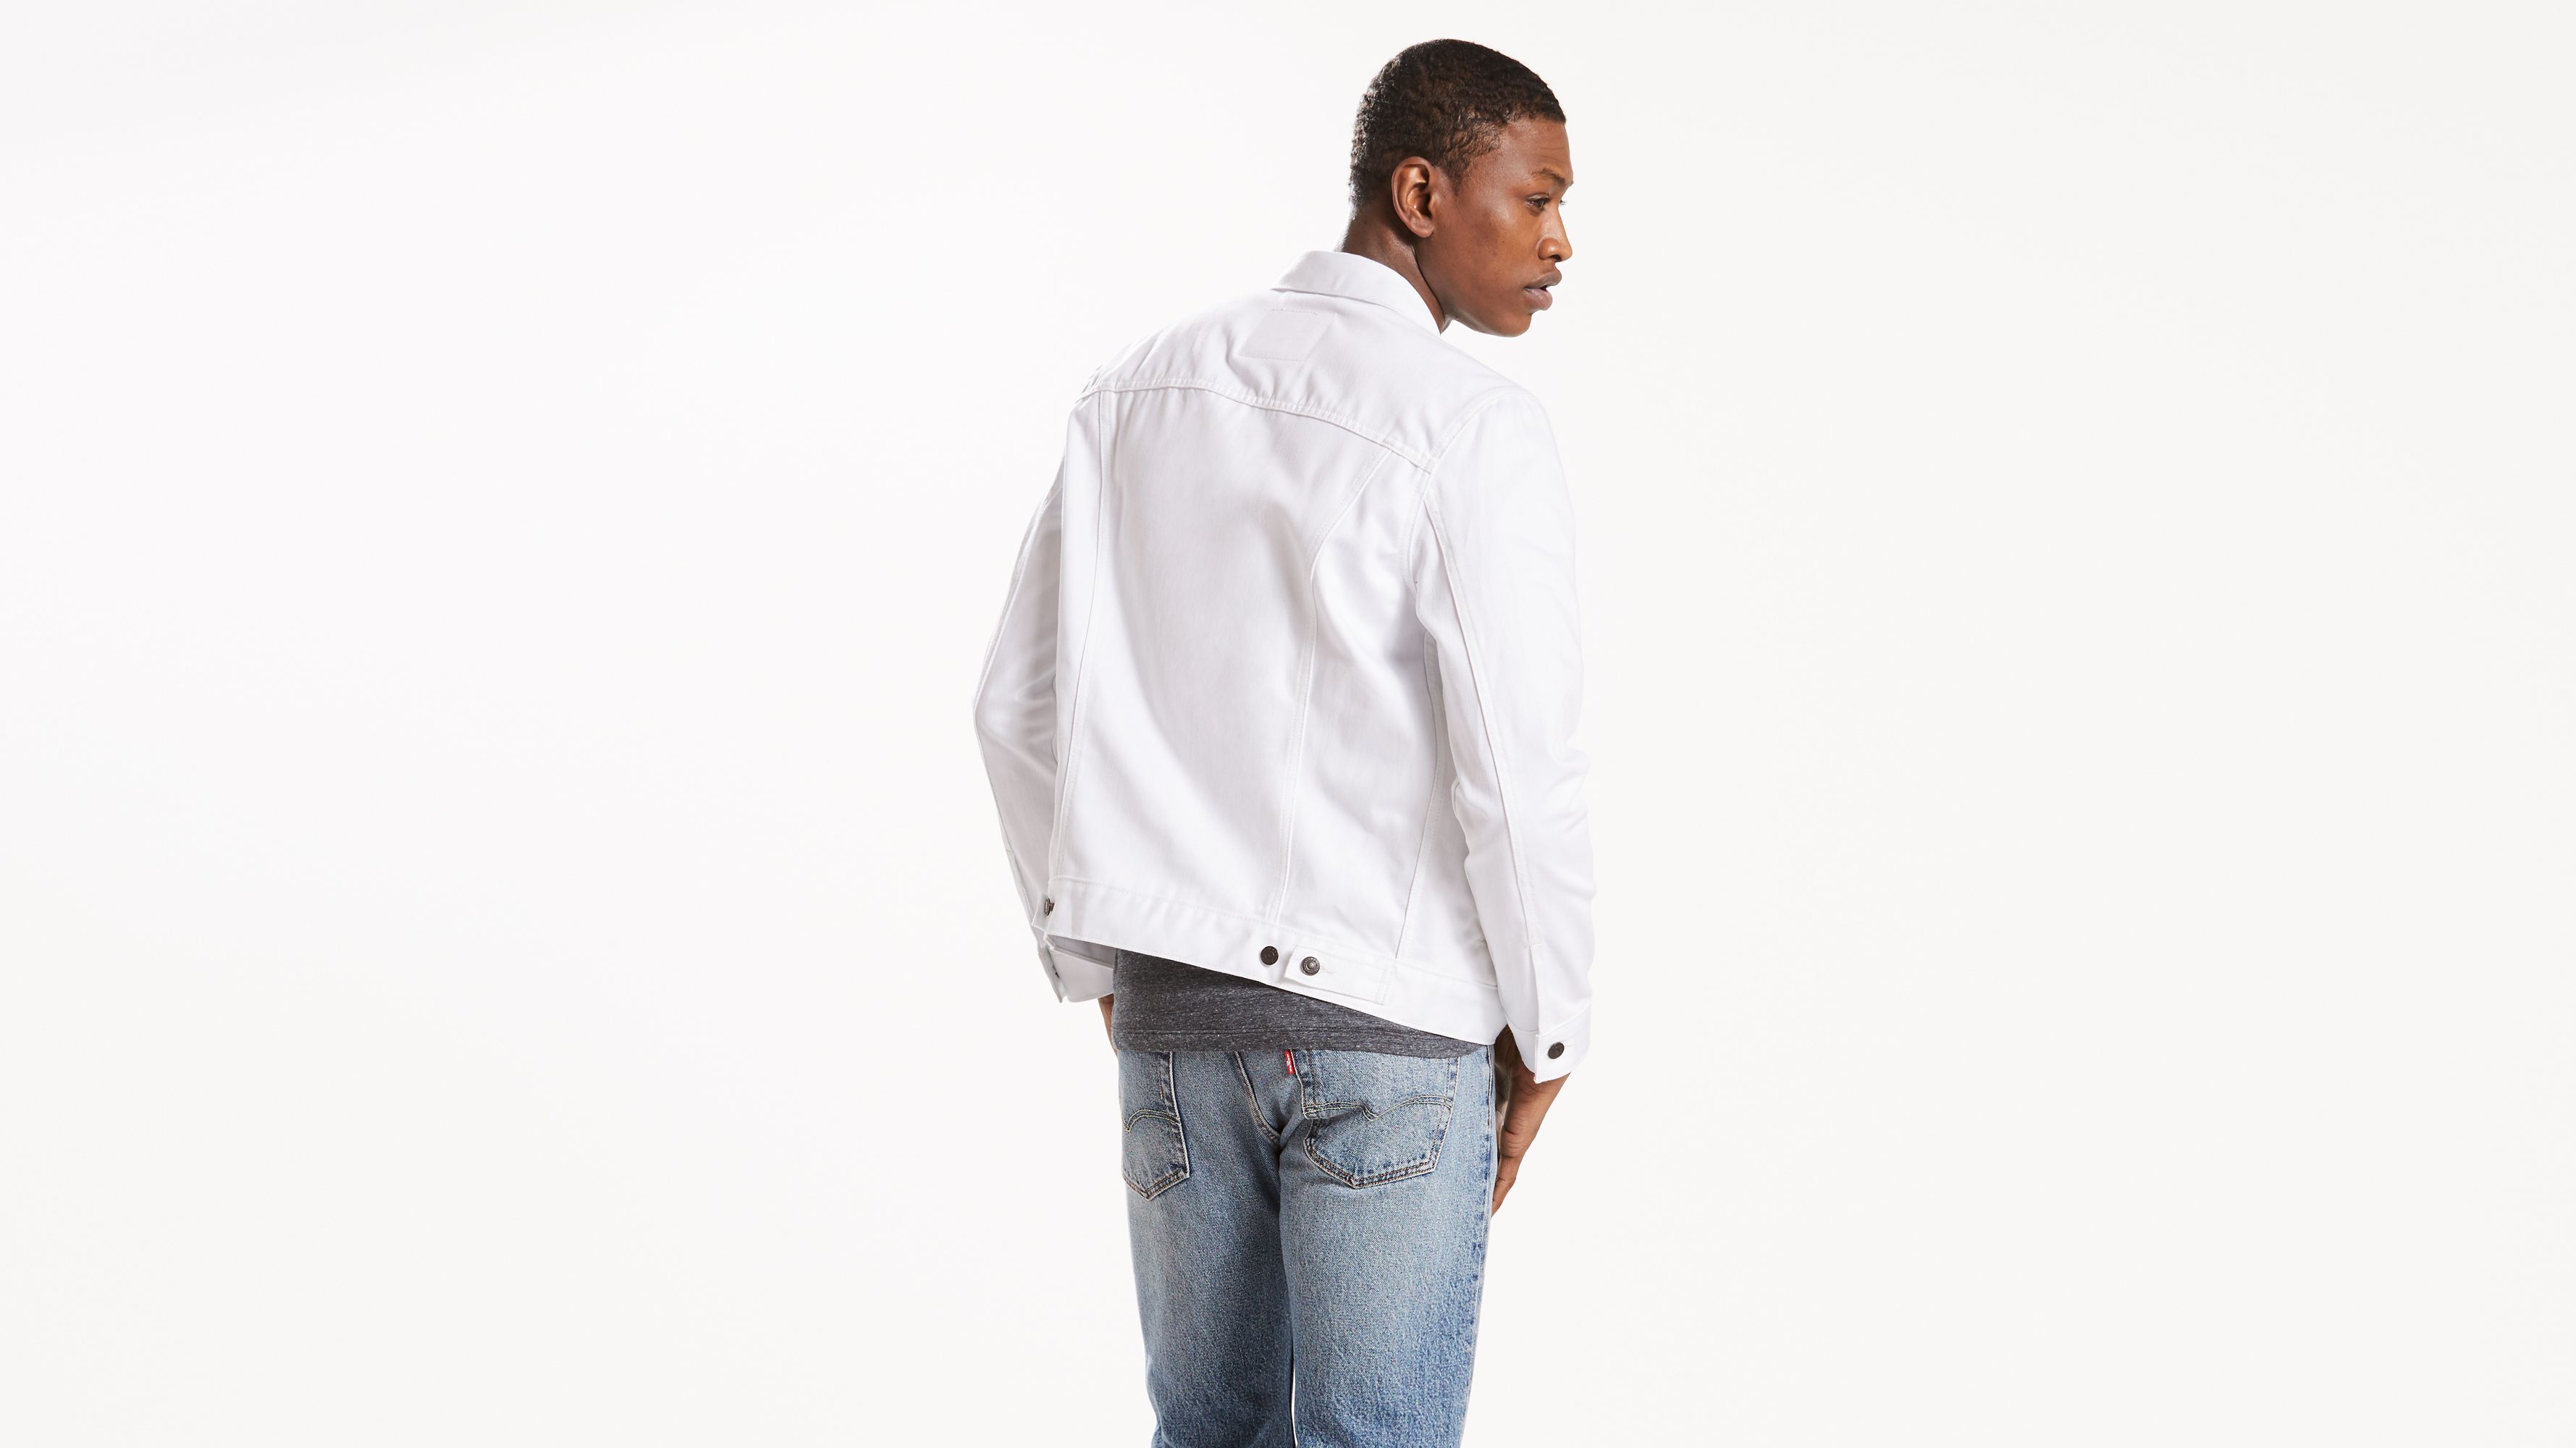 levis white denim jacket